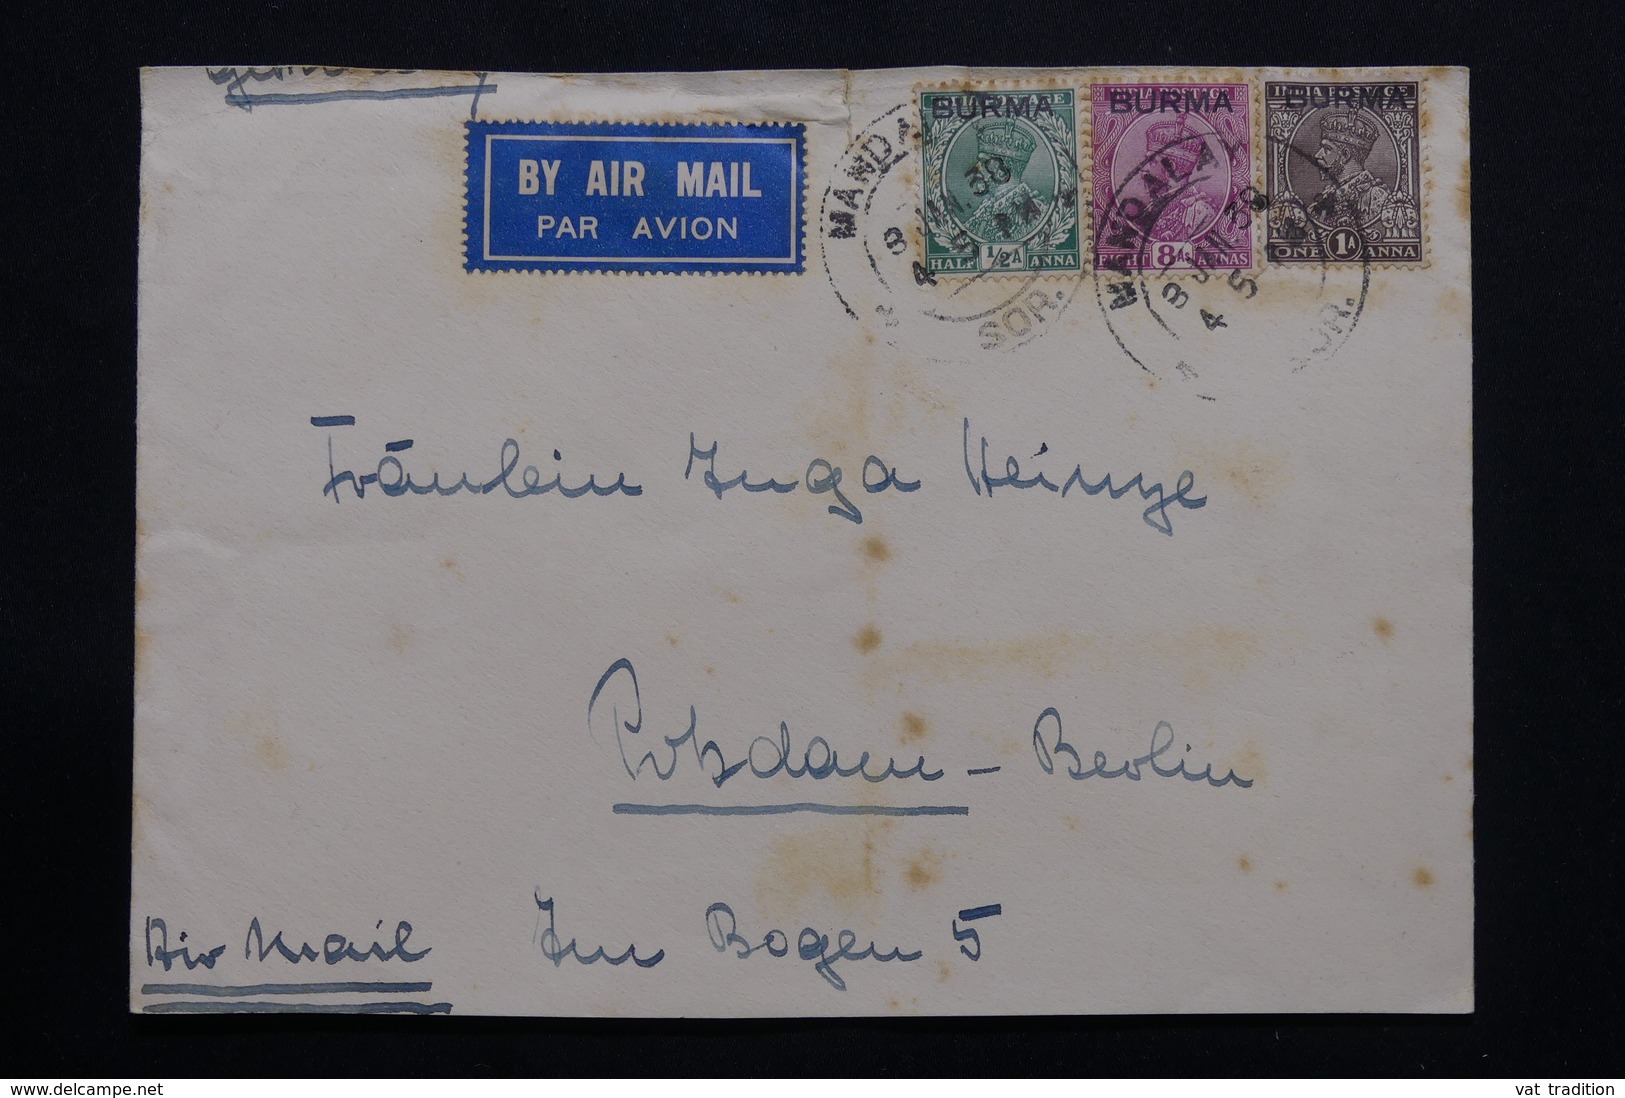 BIRMANIE - Enveloppe De Mandalay Pour L'Allemagne En 1938 Par Avion,affranchissement Plaisant - L 54397 - Burma (...-1947)